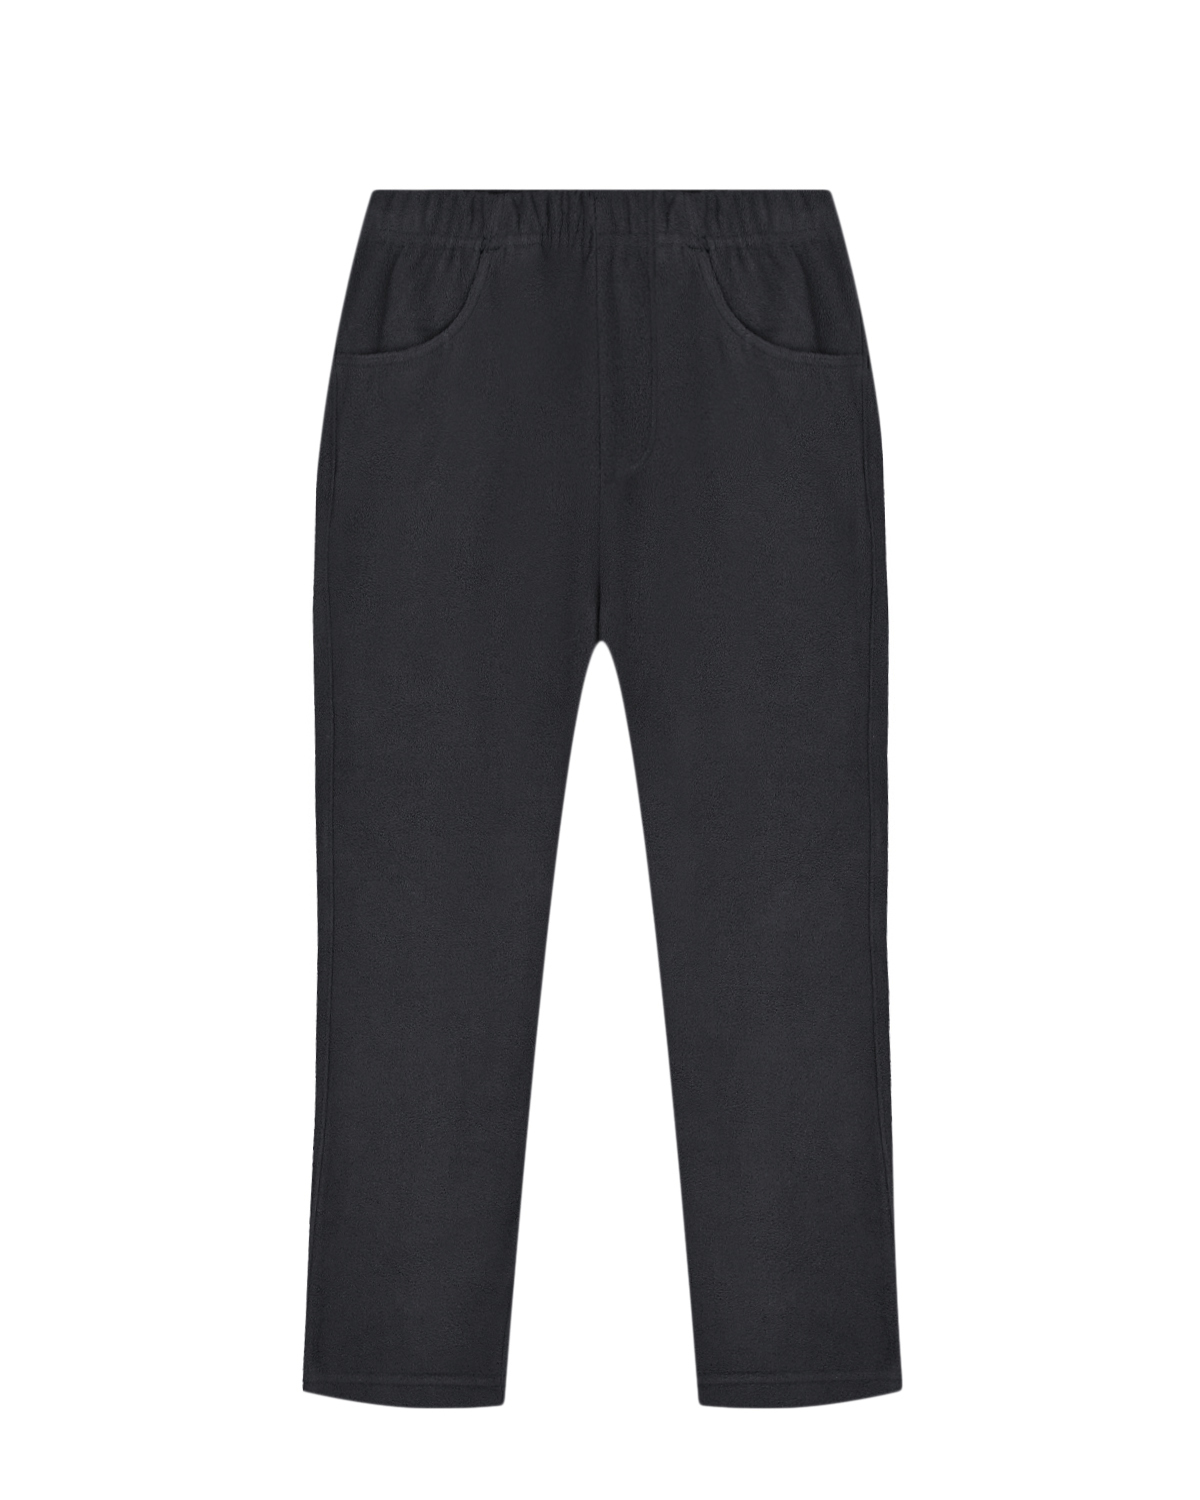 Базовые черные брюки из флиса Poivre Blanc детские, размер 98, цвет черный